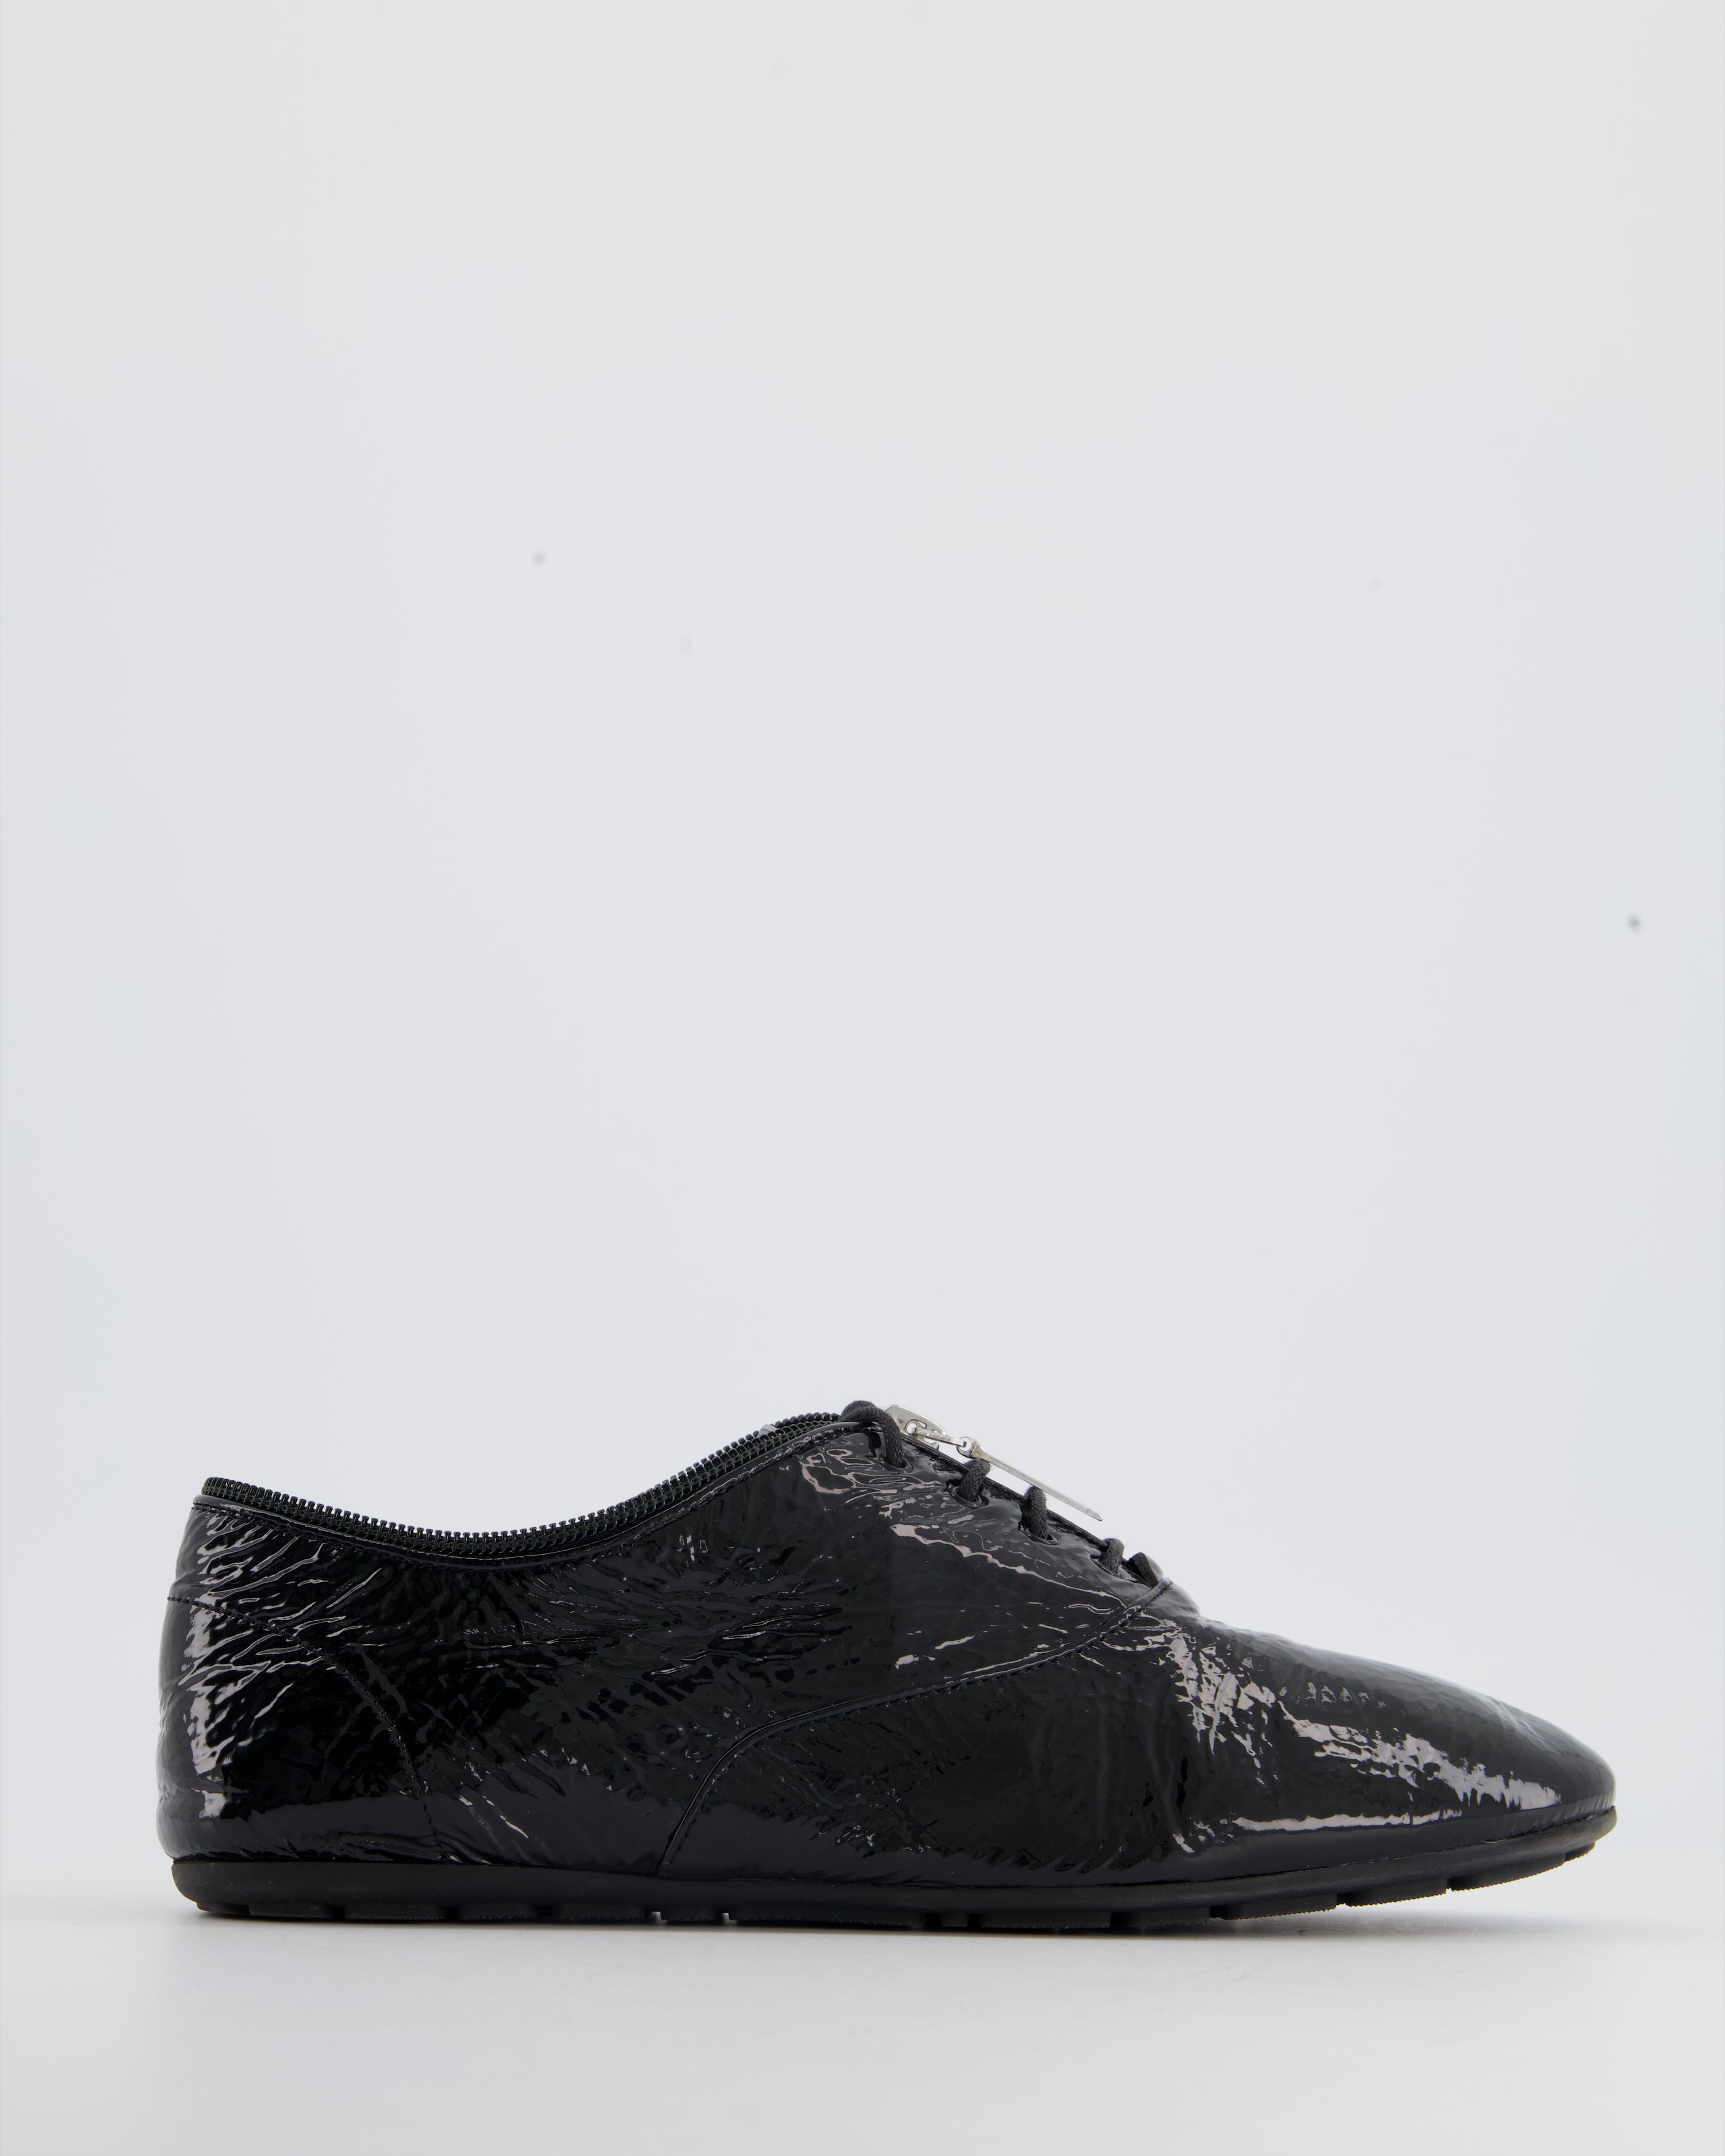 Yves Saint Laurent Shoes in Bordeaux Leather EU 38.5 – Fancy Lux